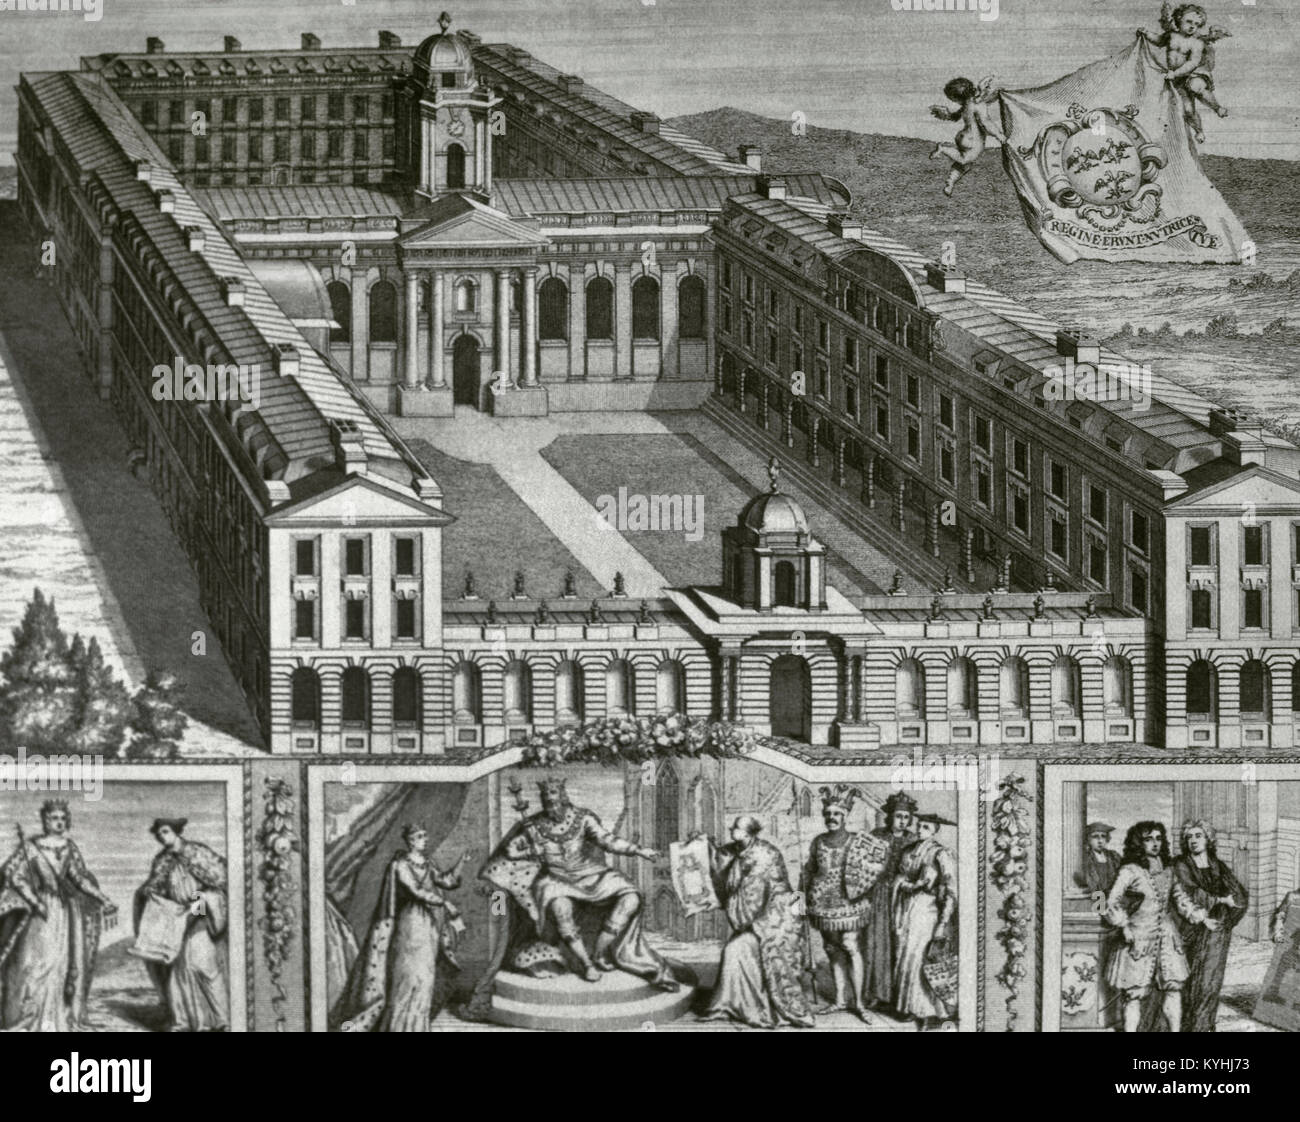 Vereinigtes Königreich. England. Oxford. Design für den Wiederaufbau des Queen's College, vom englischen Architekten Nicholas Hawksmoor (vermutlich 1661-1736), 1727. Oxford Almanack. Gravur. Stockfoto